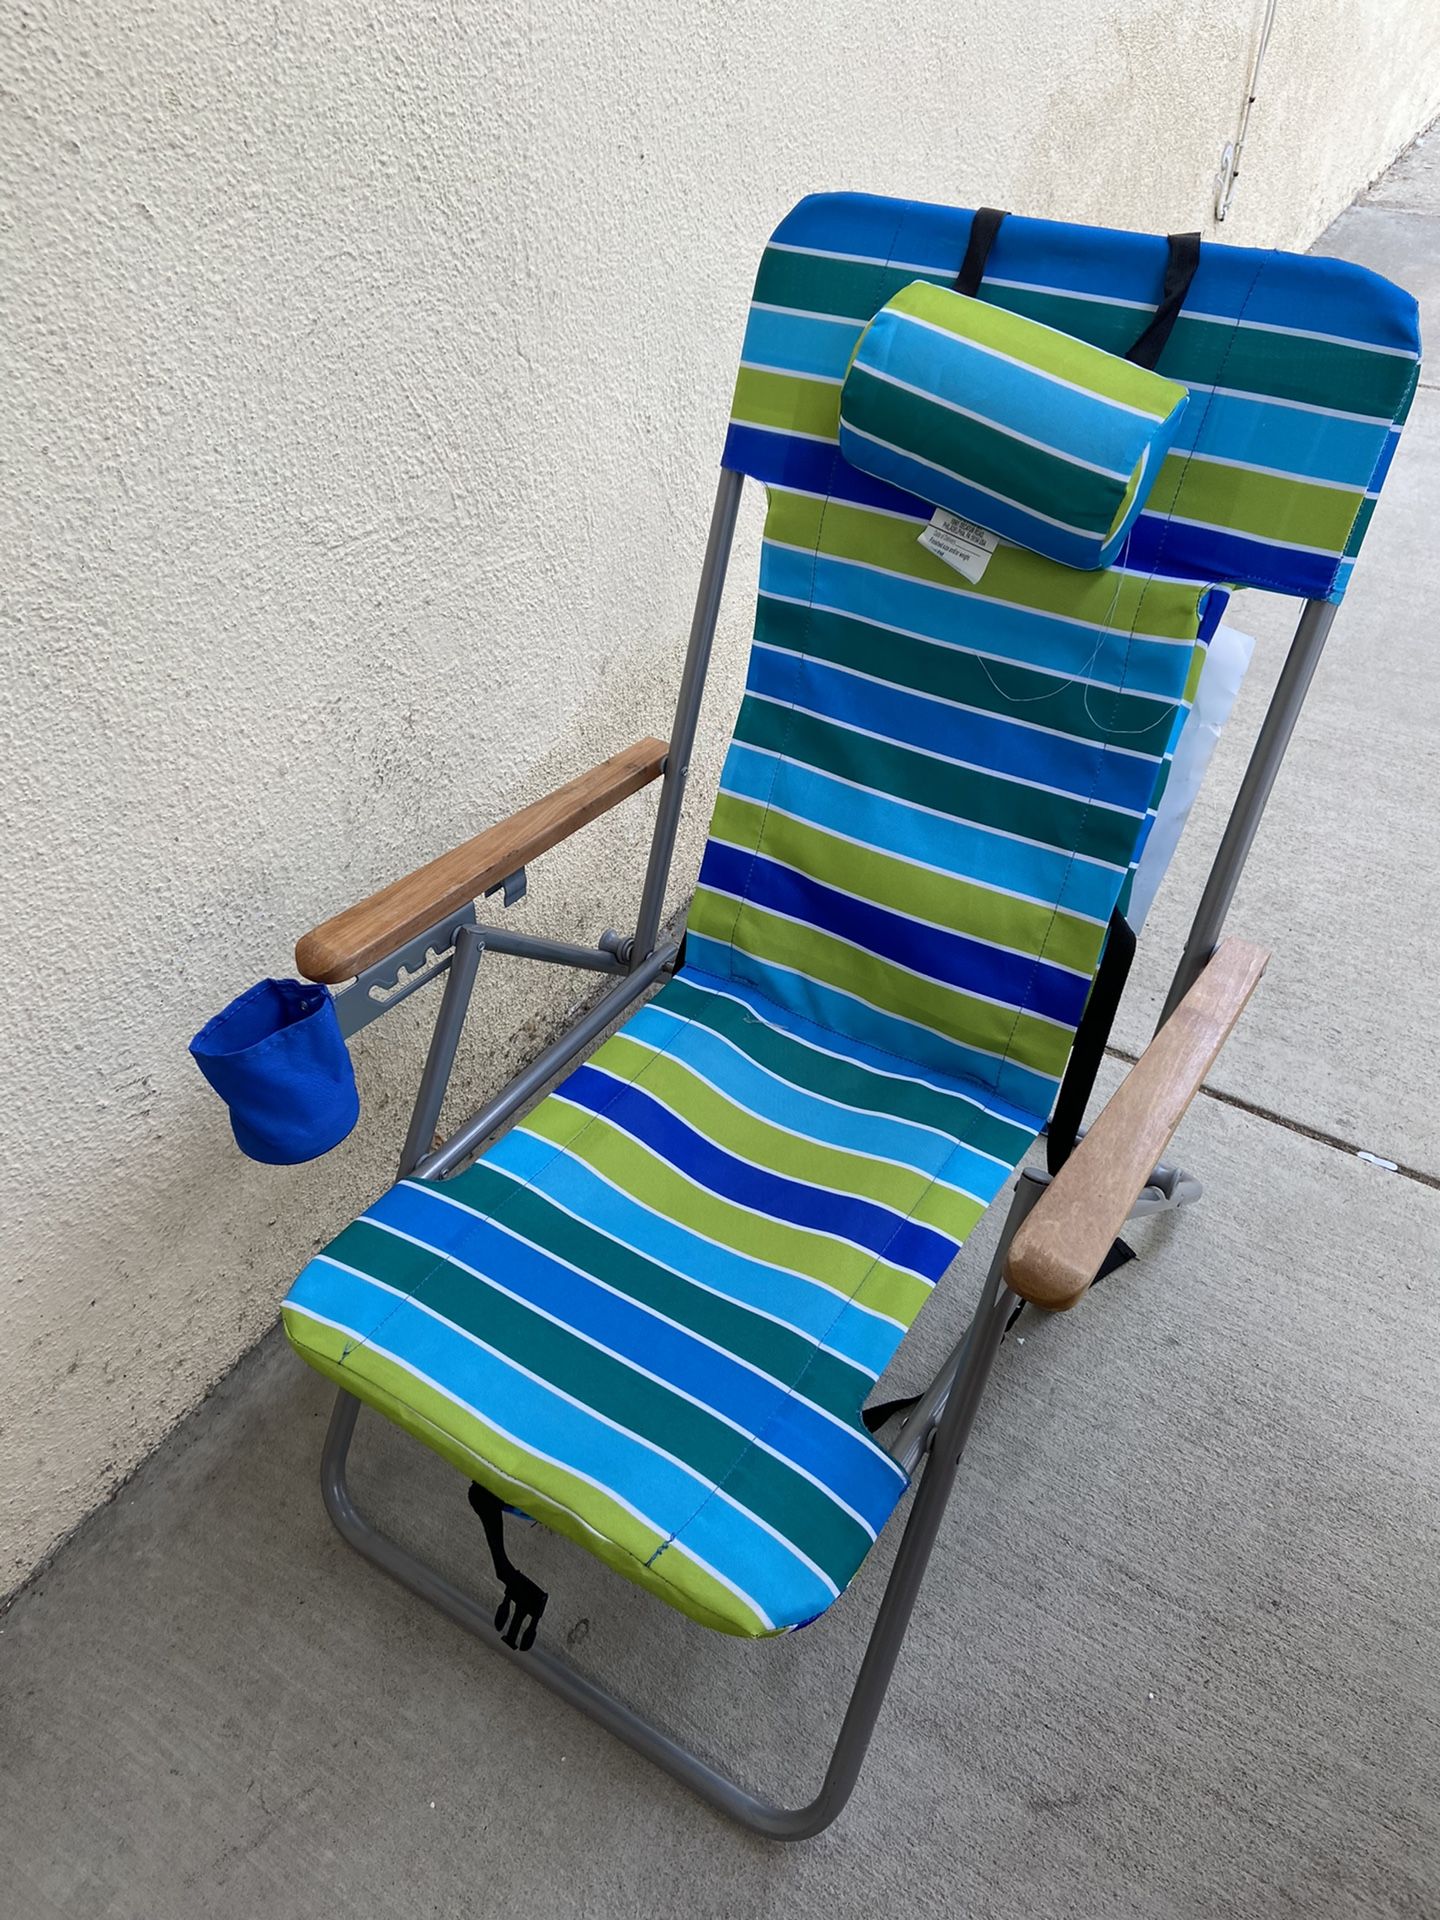 Beach camping chair